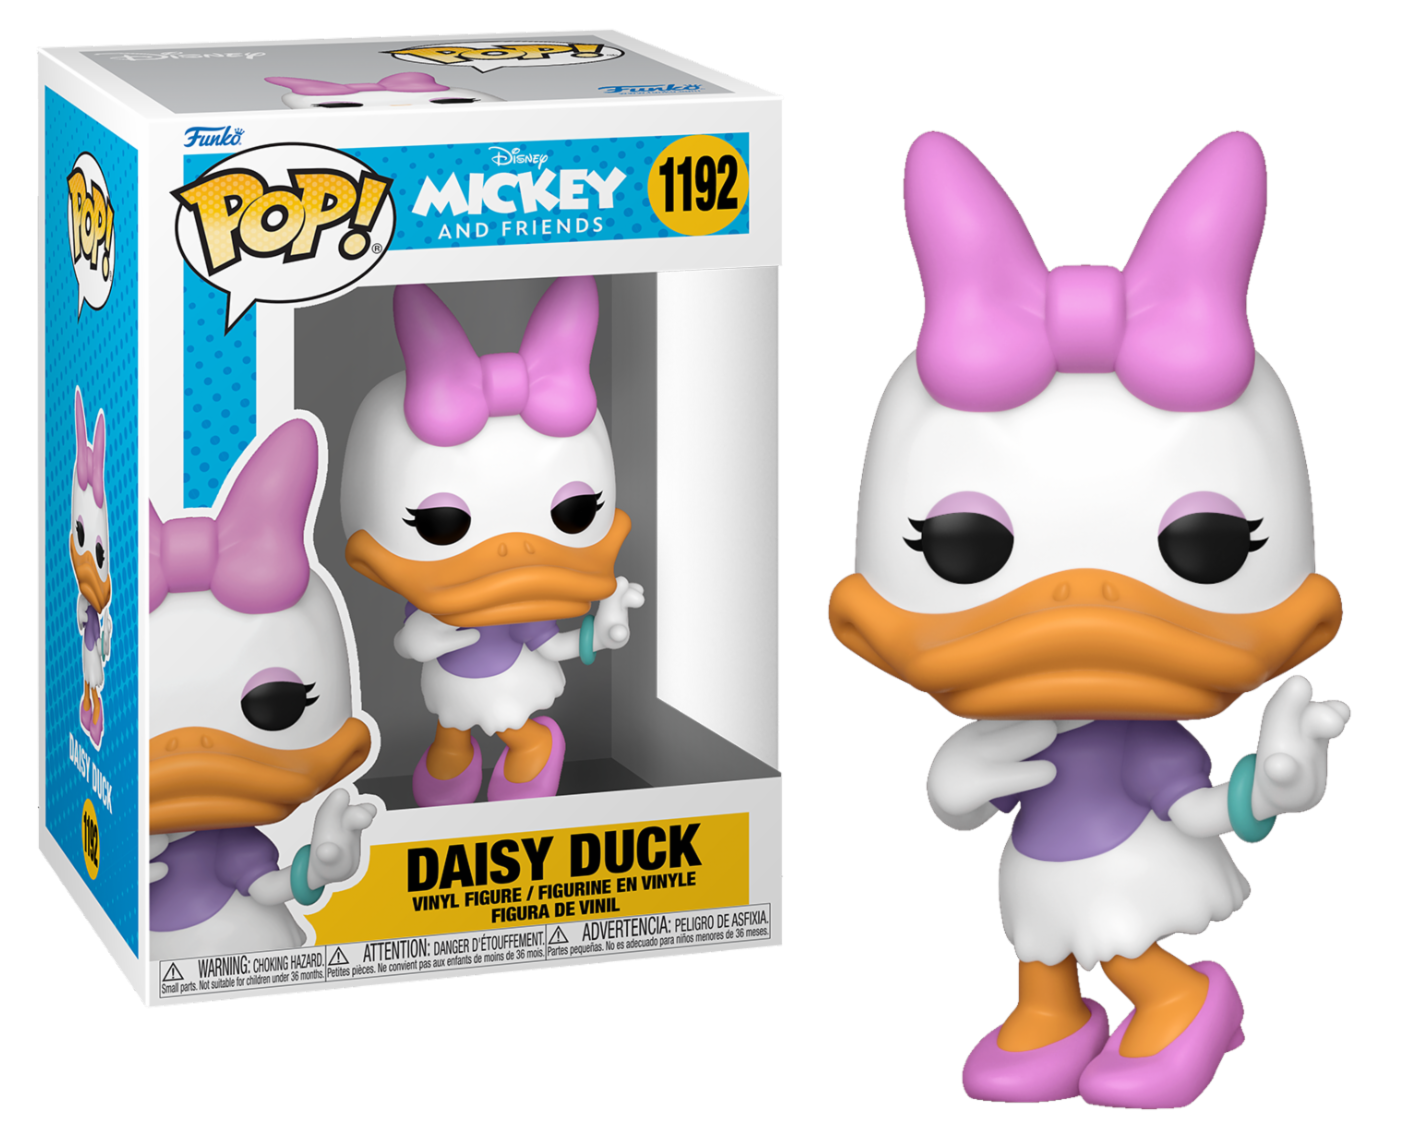 Funko Pop! Disney - Mickey & Friends: Daisy Duck (1192)